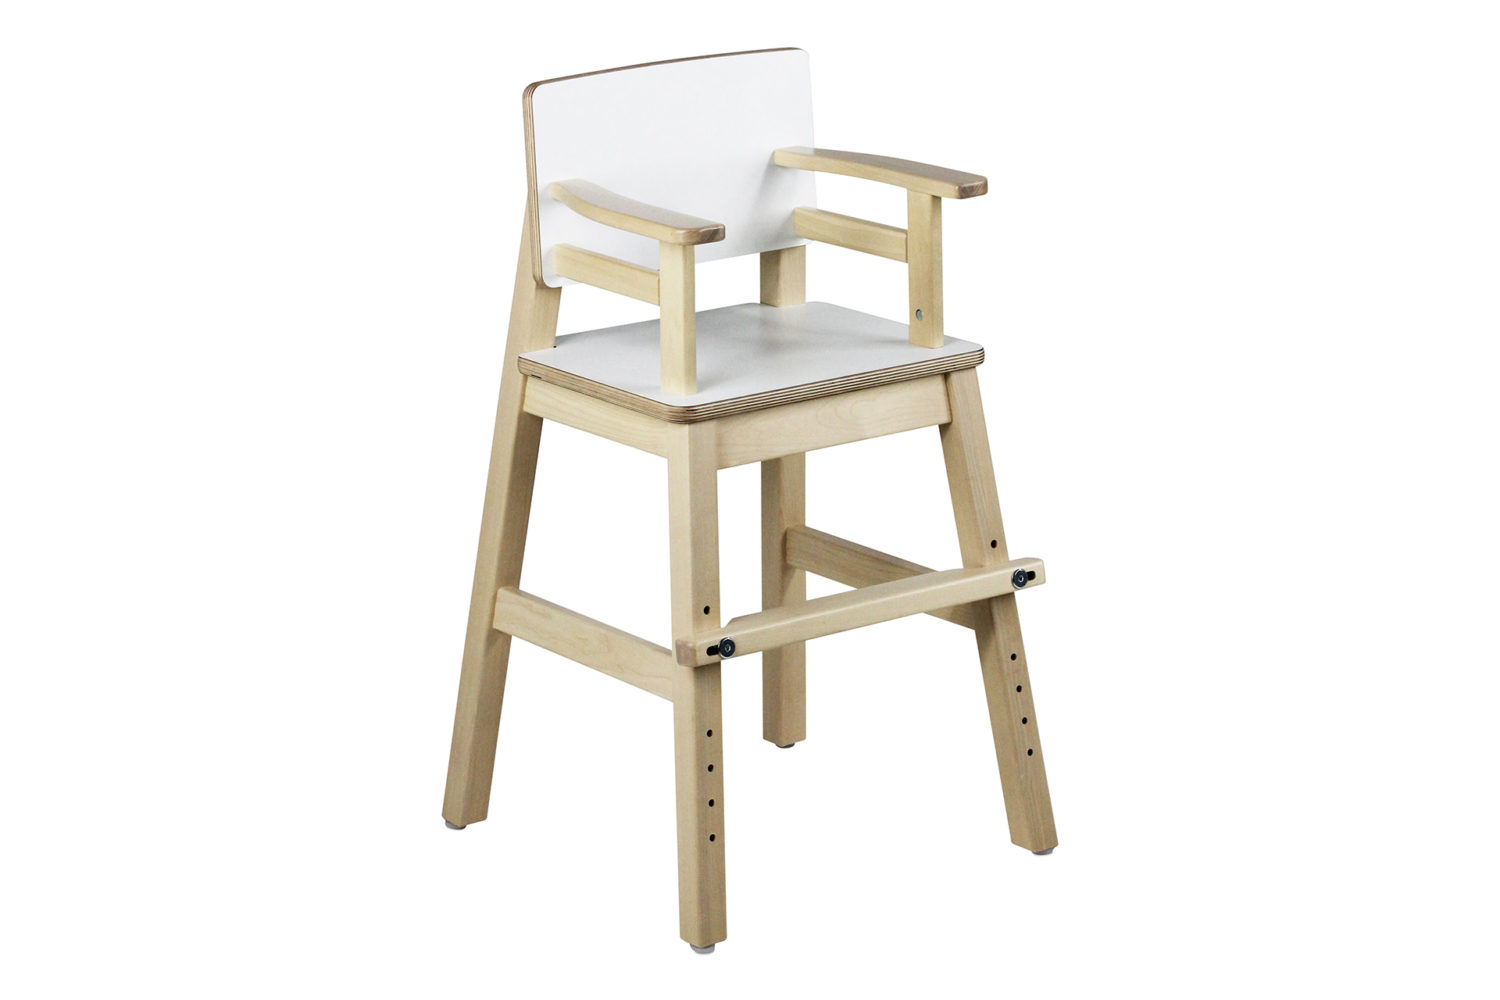 Muksu-tuoli on valmistettu lakatusta koivusta, istuimessa ja selkänojassa on laminaattipinta